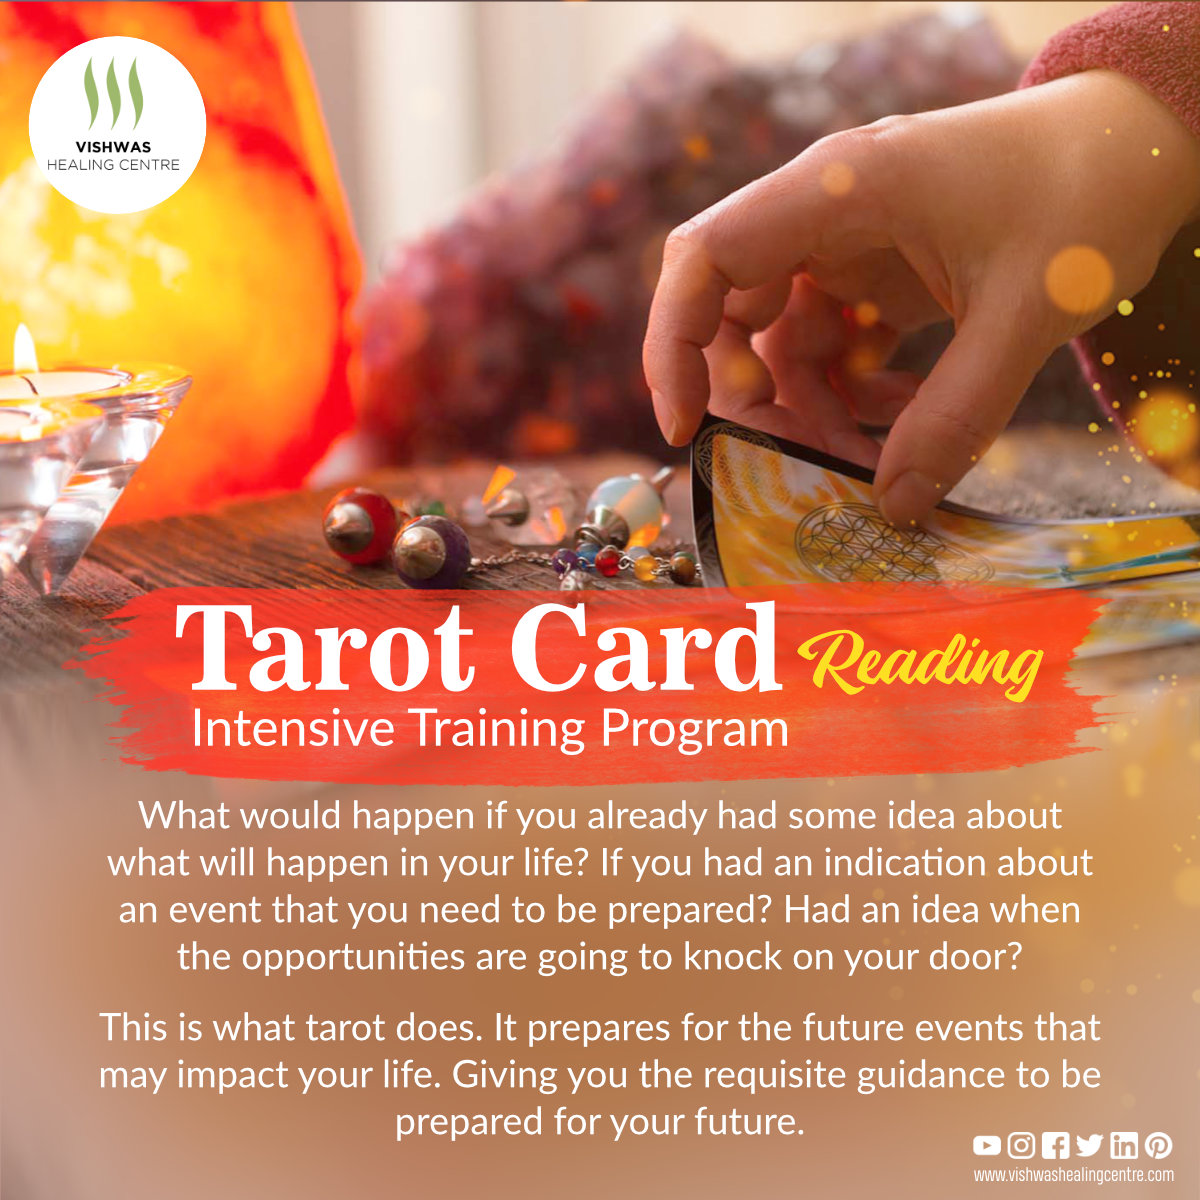 Tarot Card Reading Training Program, New Delhi, Delhi, India